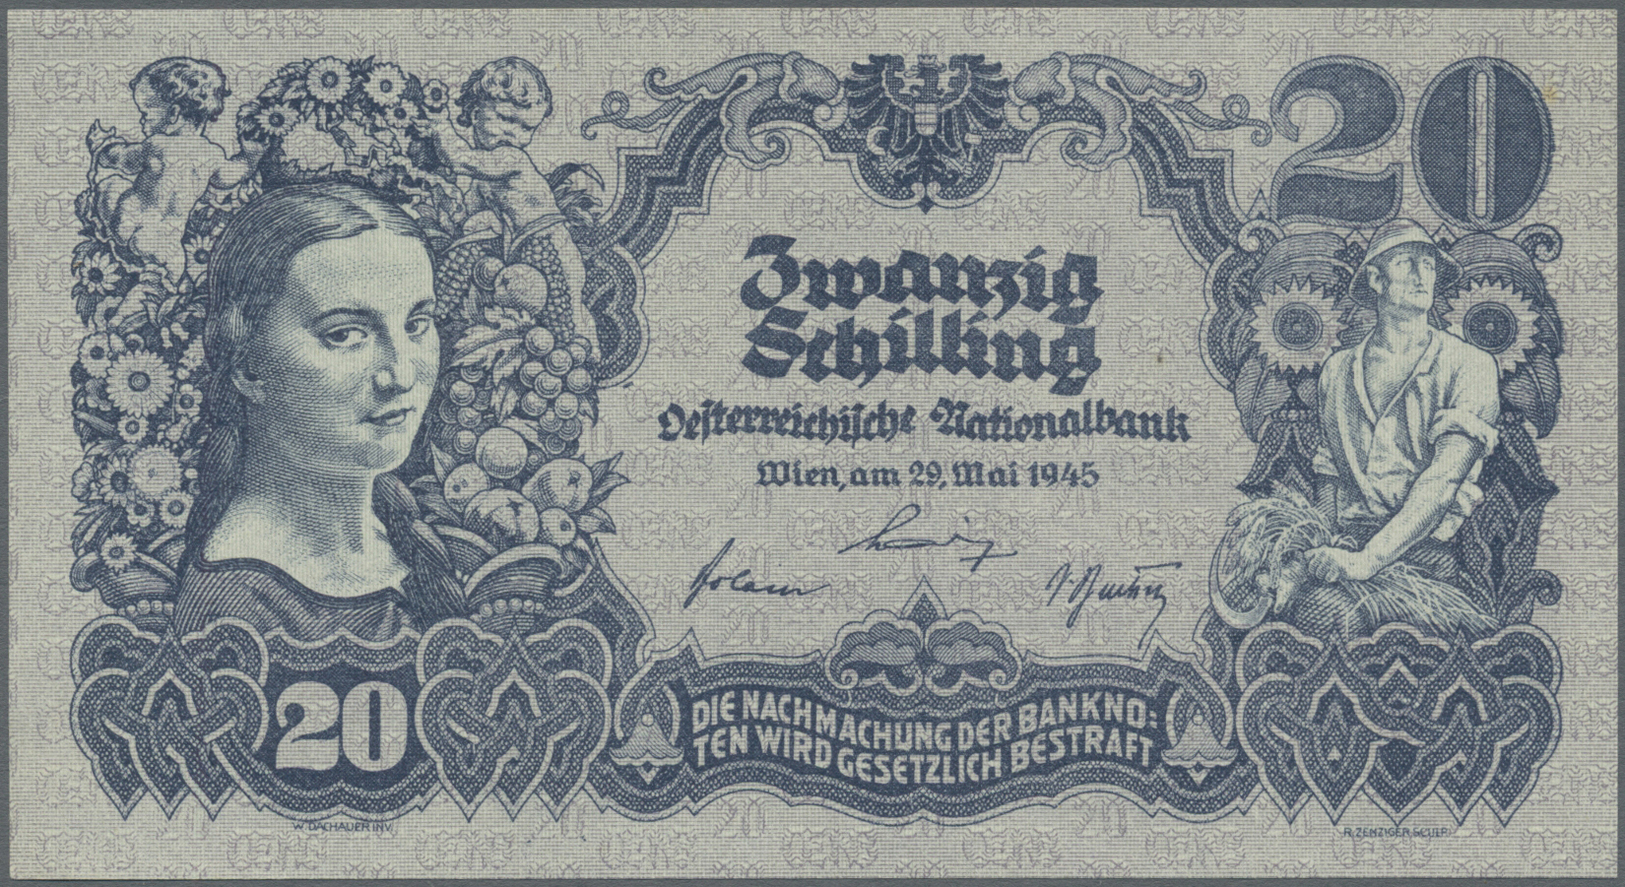 00186 Austria / Österreich: 20 Schilling 1945 P. 116 In Condition: UNC. - Austria